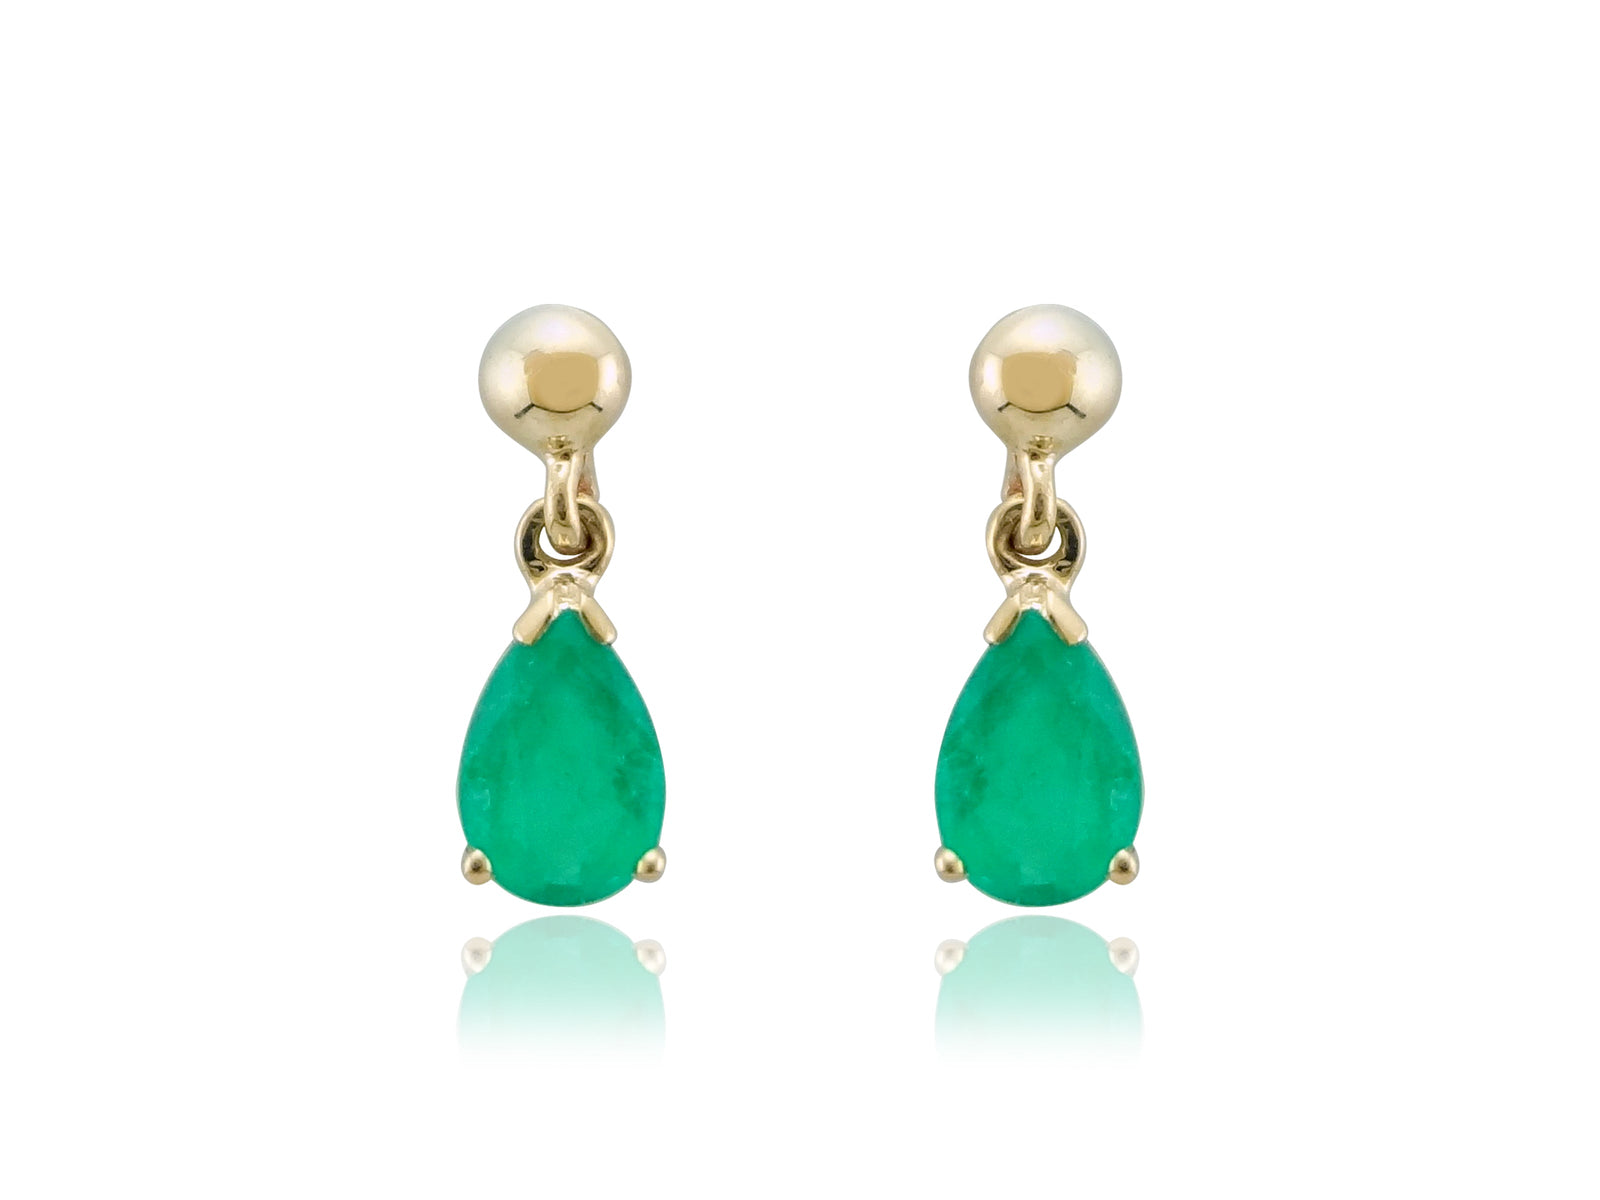 9ct gold 7x5mm pear shape emerald drop earrings